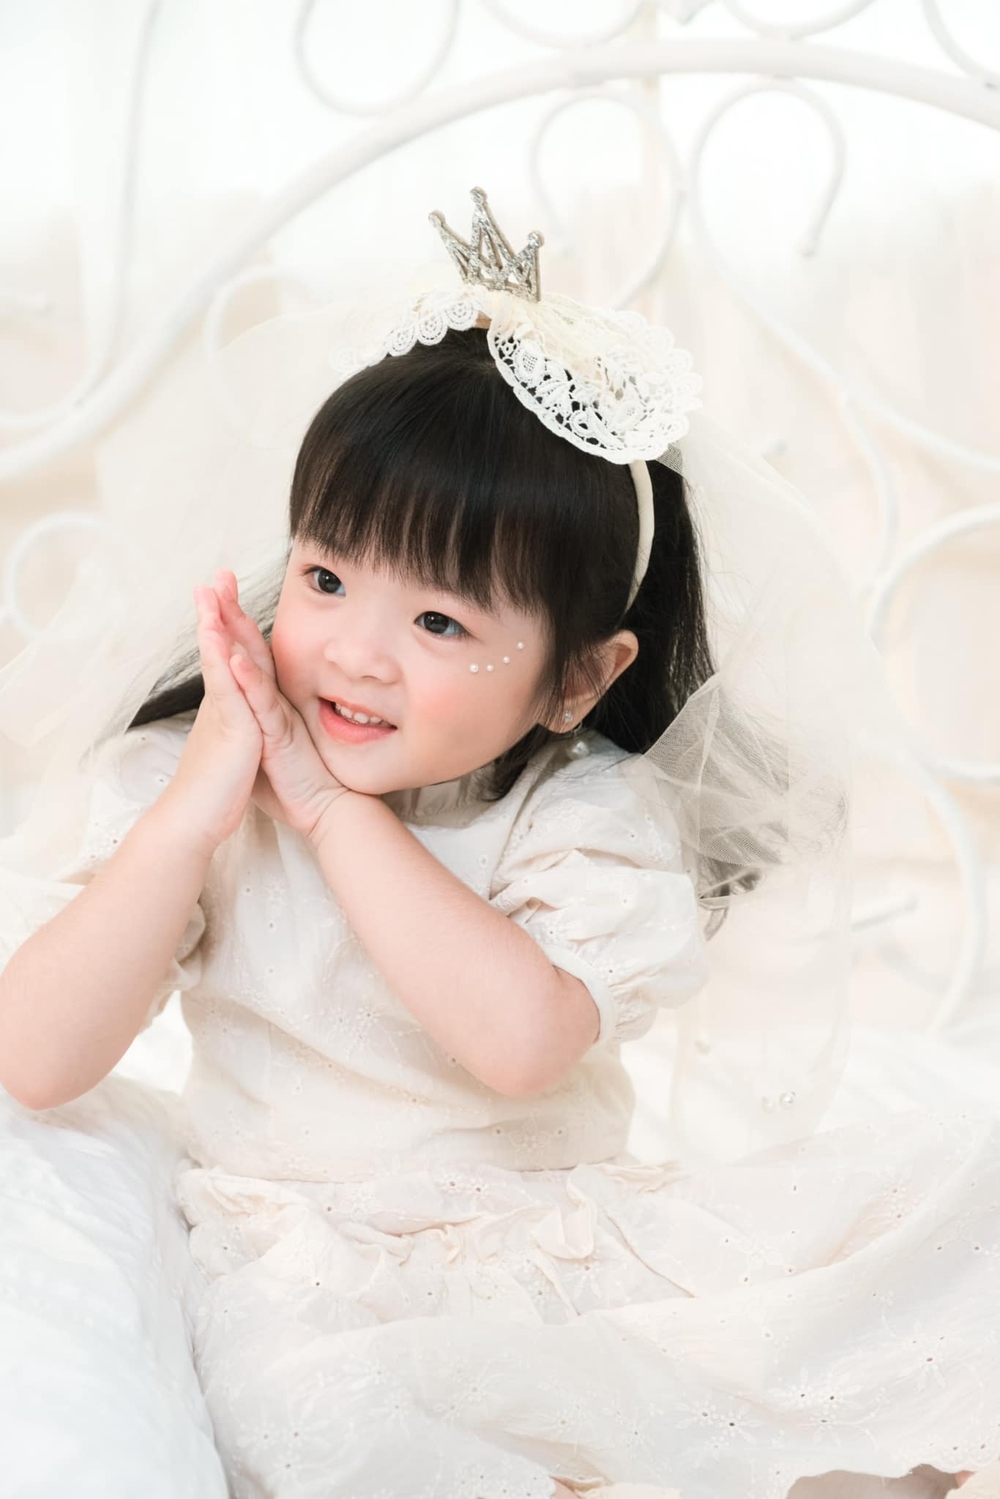 Con gái Trương Mỹ Nhân - Phí Ngọc Hưng được khen như tiểu công chúa, mới 3 tuổi đã bộc lộ tính cách đáng khen - Ảnh 4.